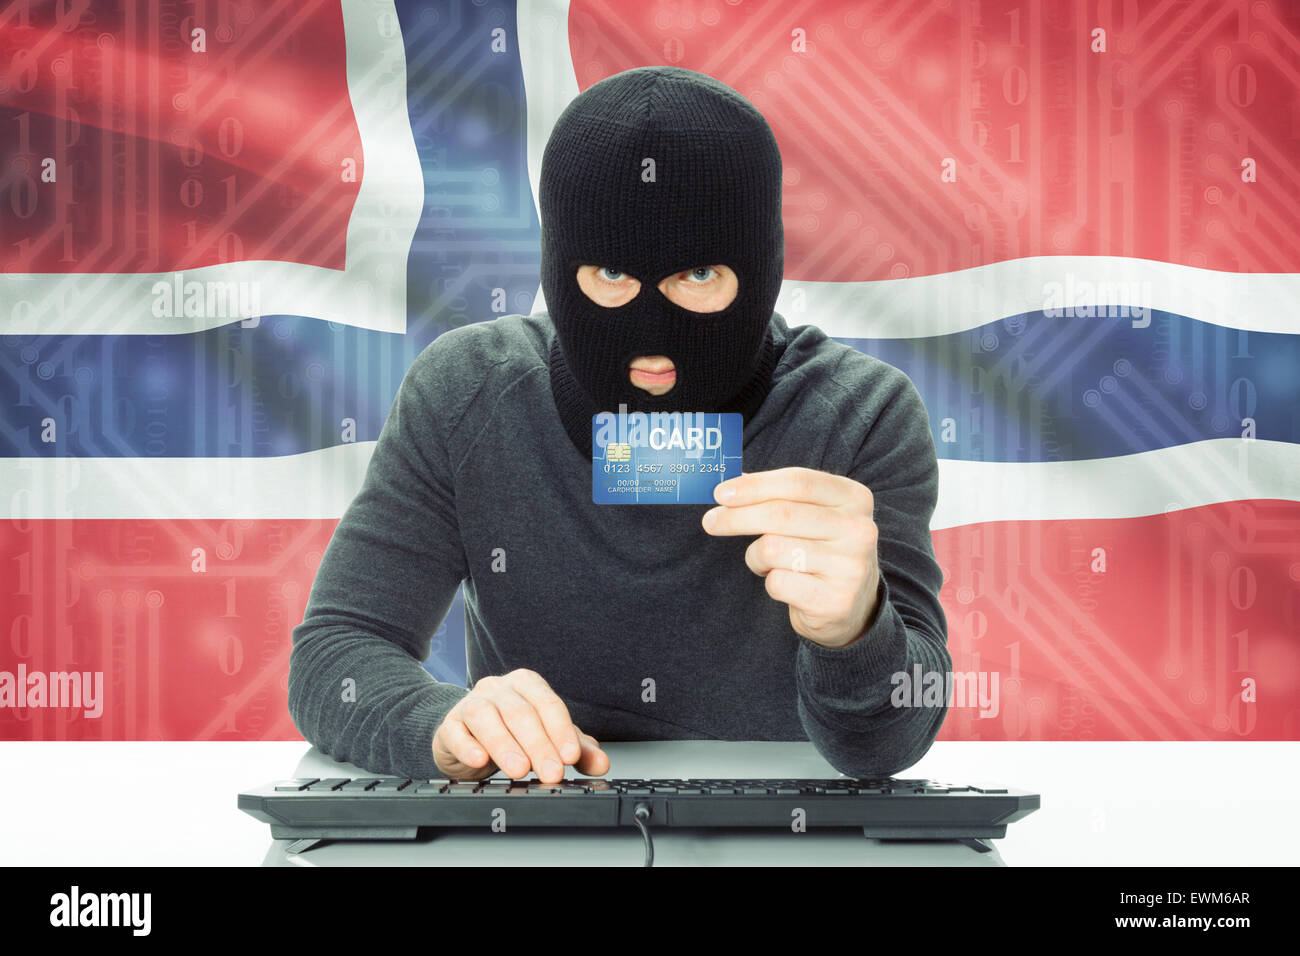 La cybercriminalité concept avec drapeau sur arrière-plan - Norvège Banque D'Images